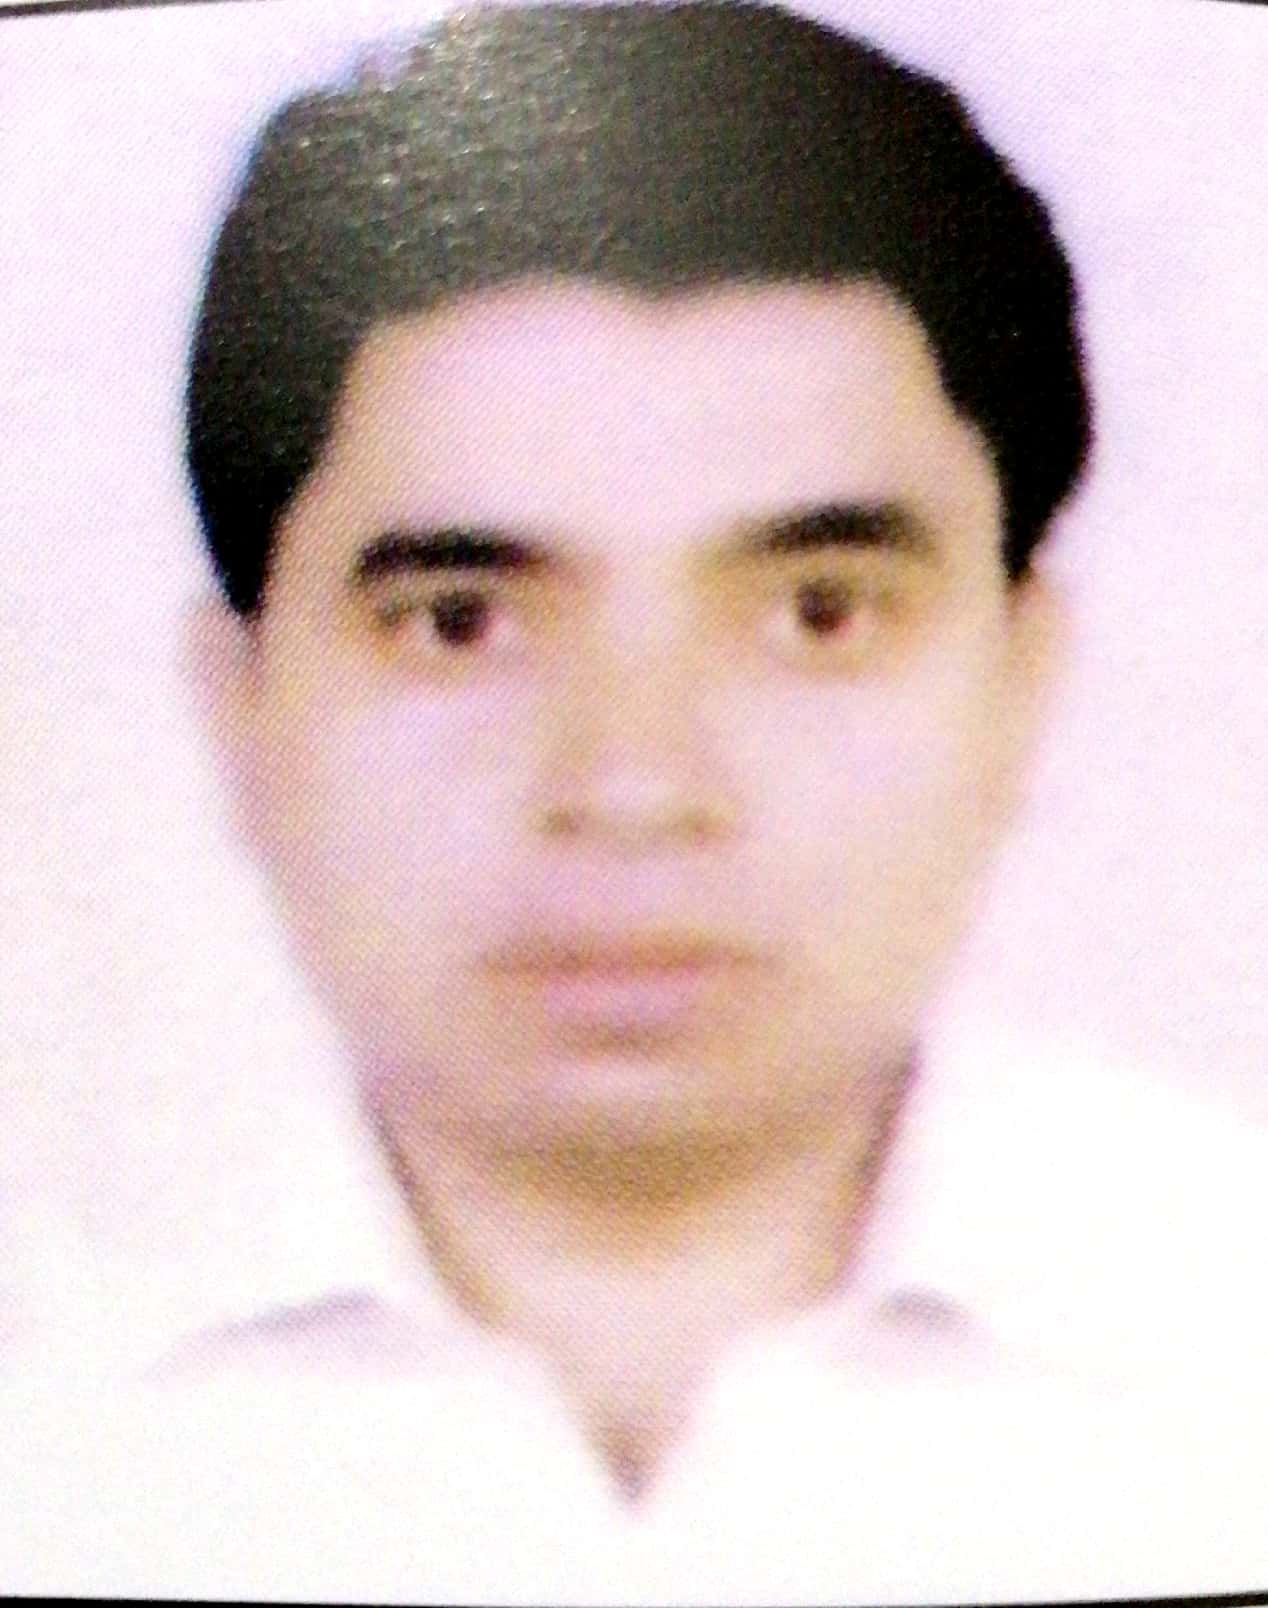 Mr. Md. Zahirul Islam Chowdhury